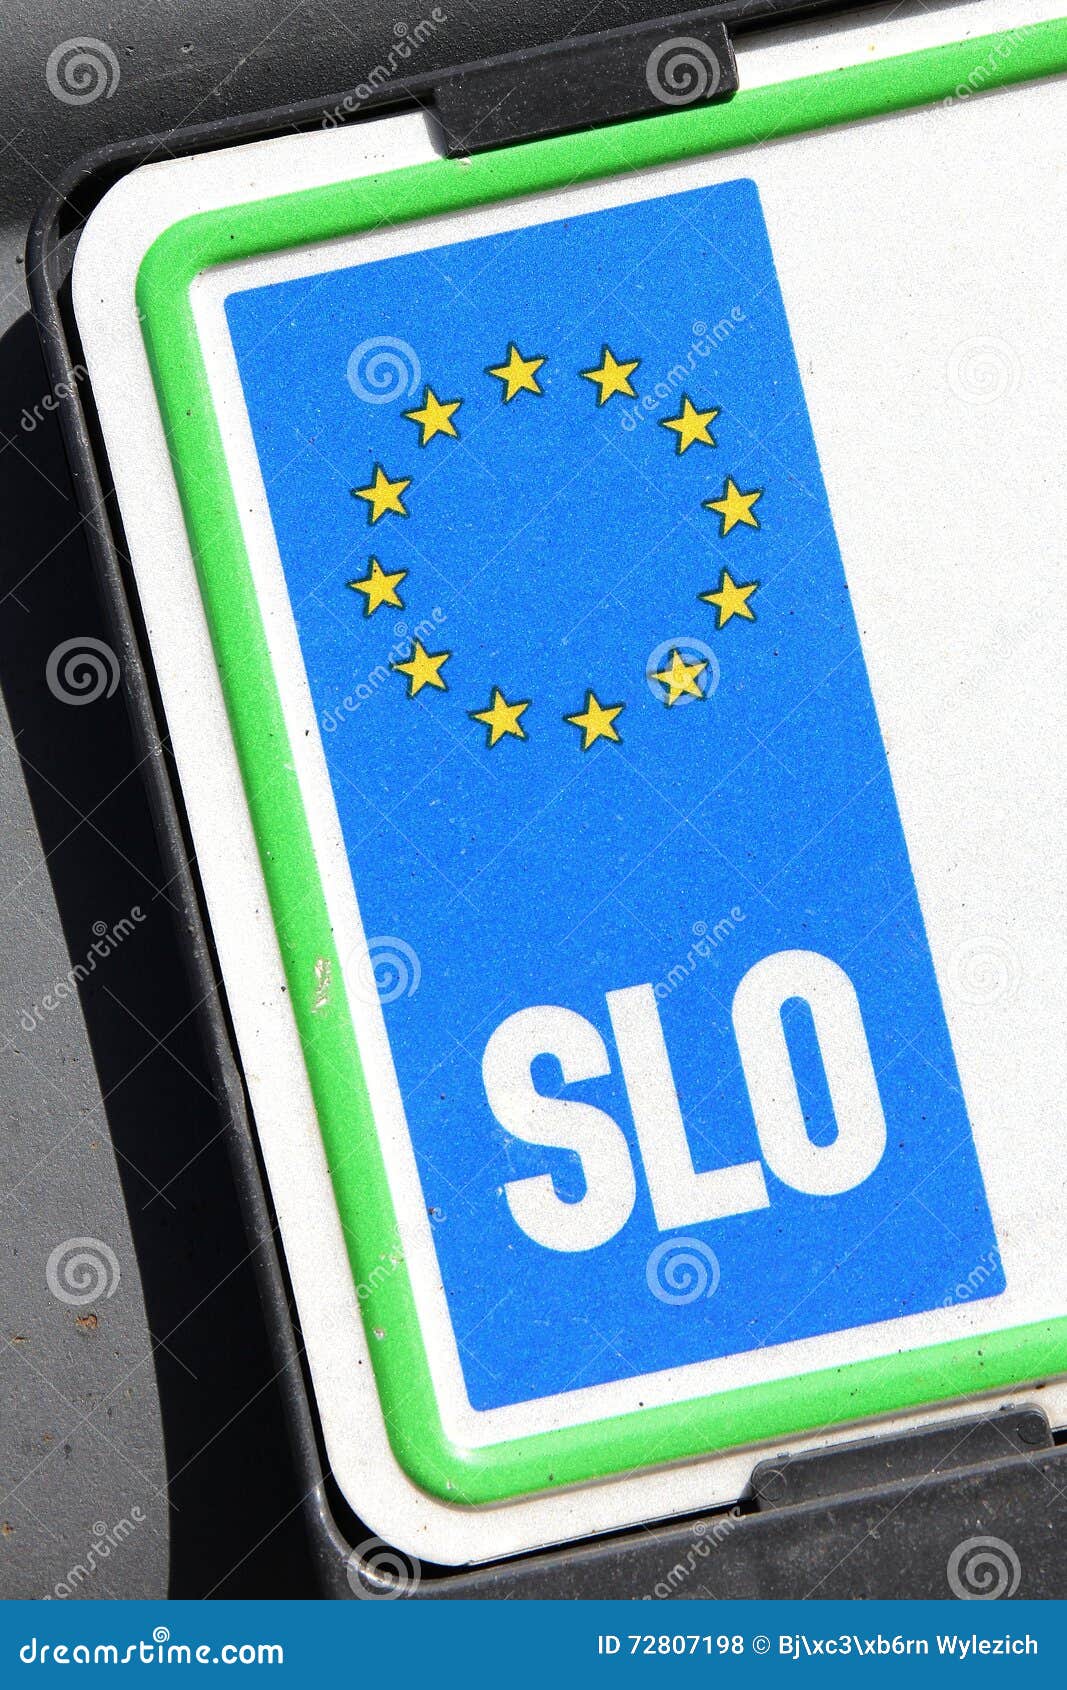 EU registration plate - SLO. Country identifier Slovenia of EU car registration plate